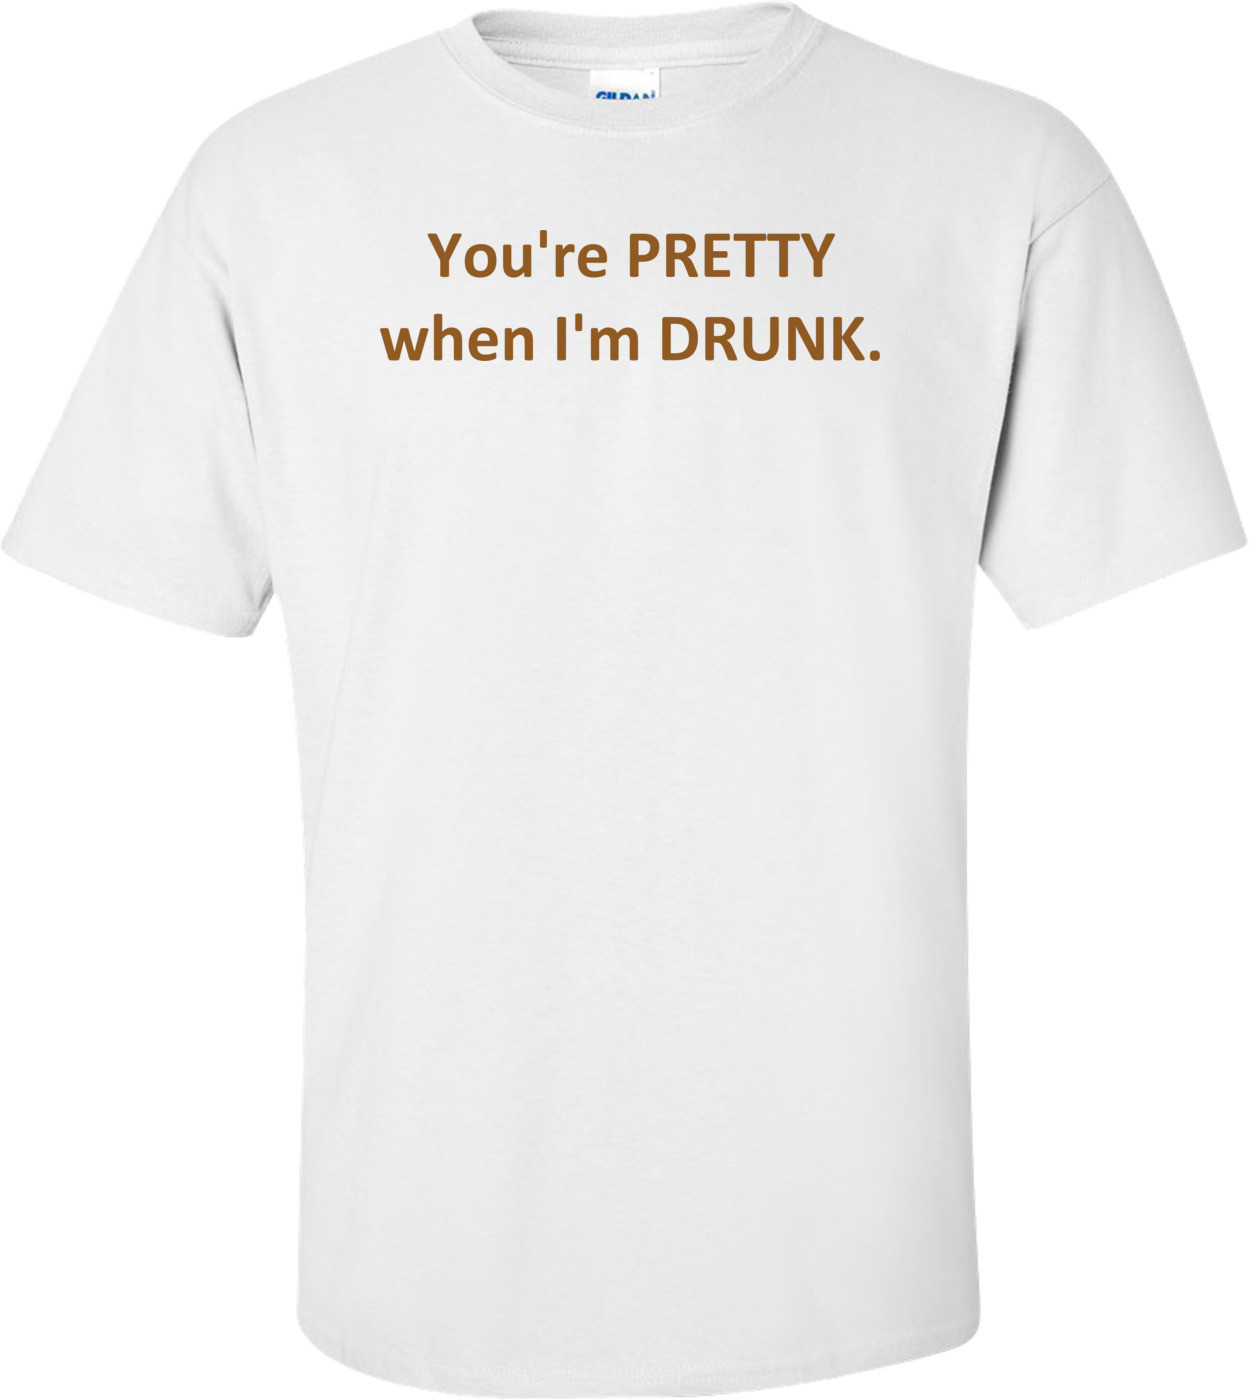 You're PRETTY when I'm DRUNK.